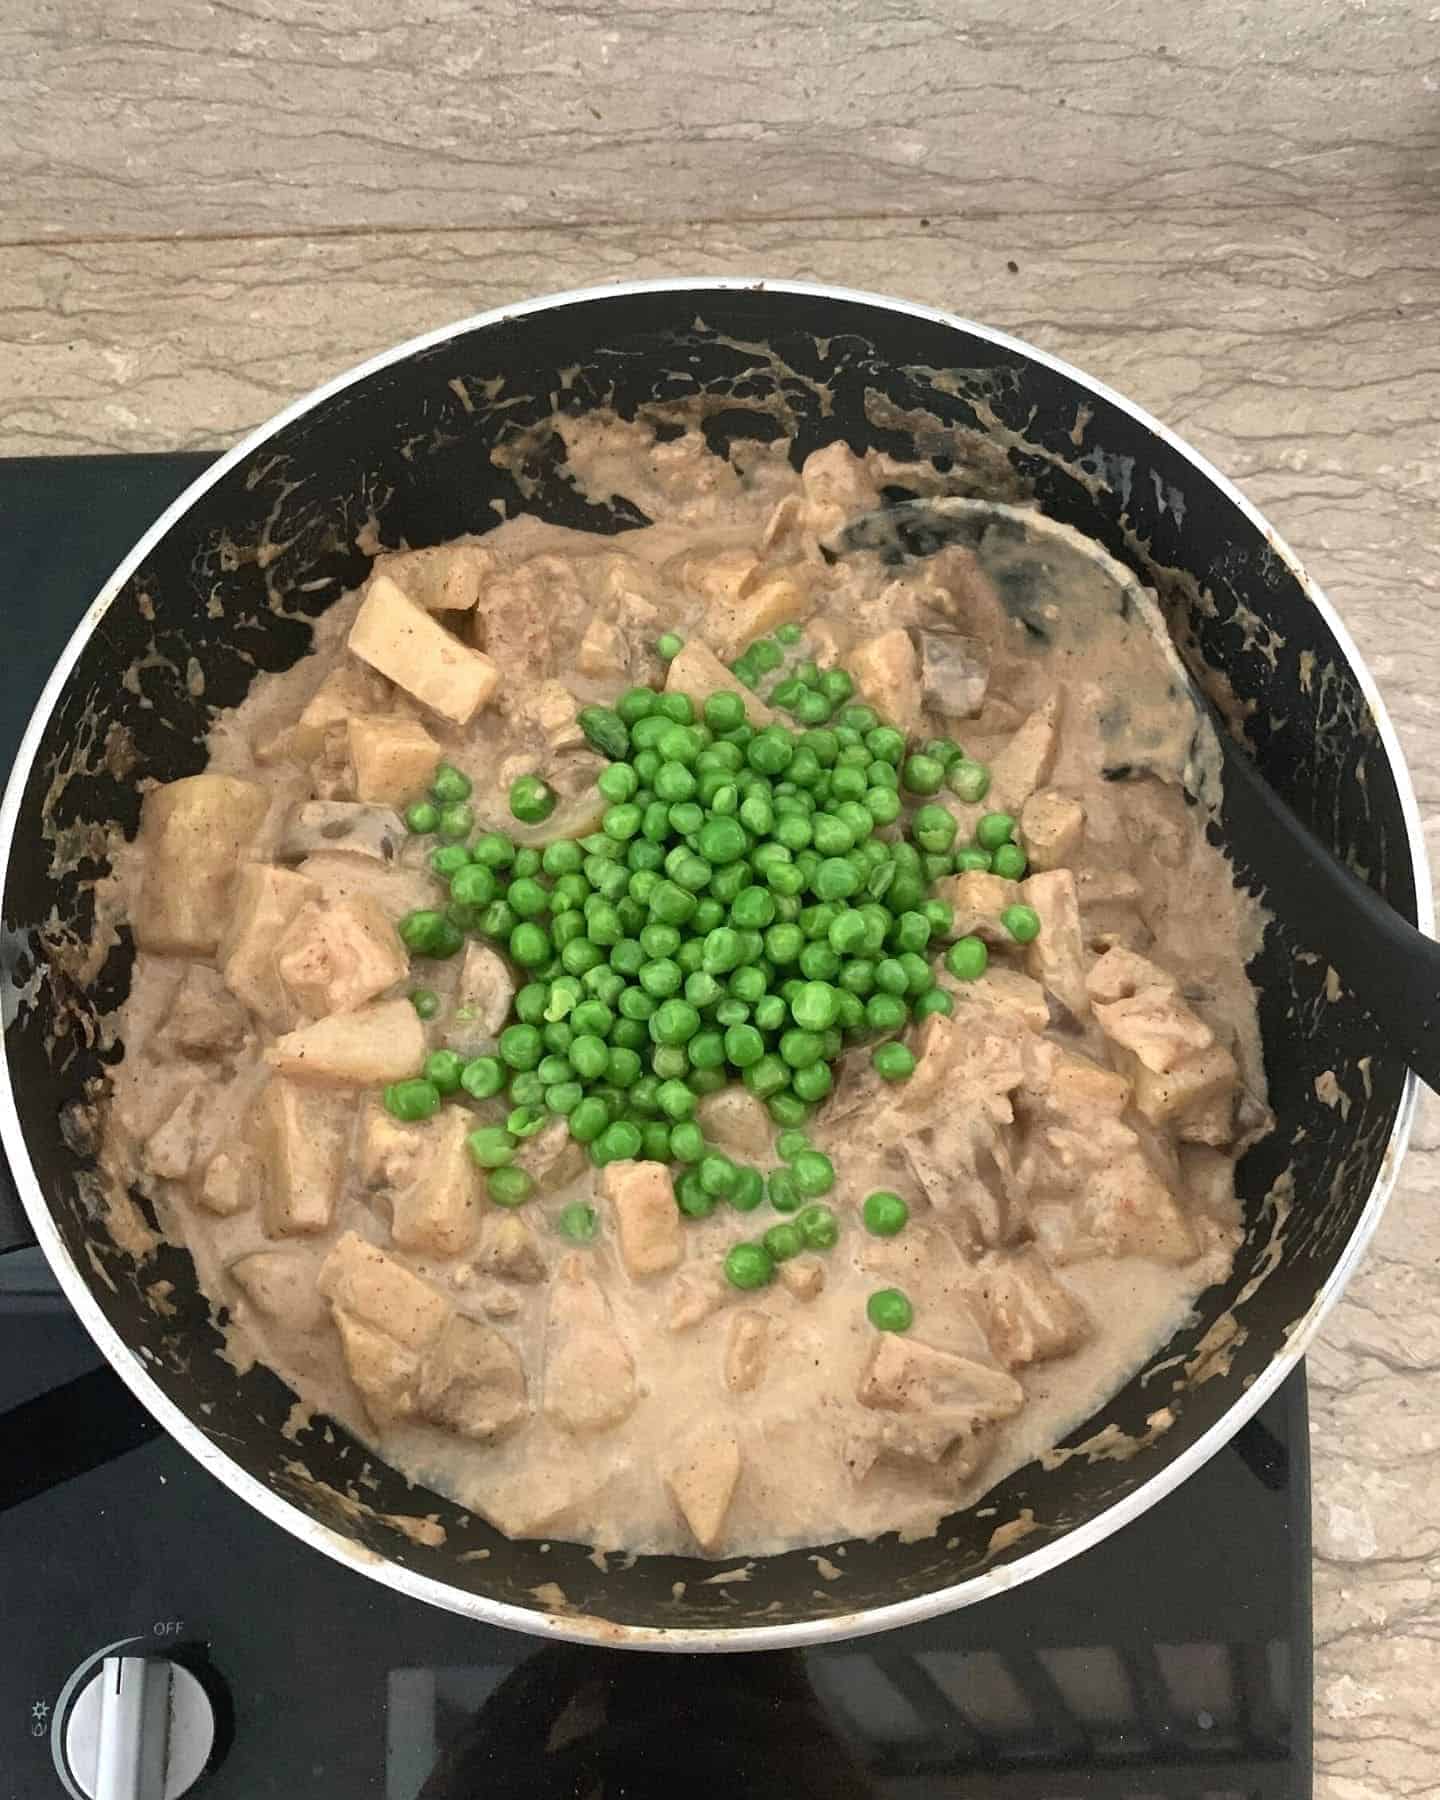 Peas on top of a brown curry in a pan on a hob